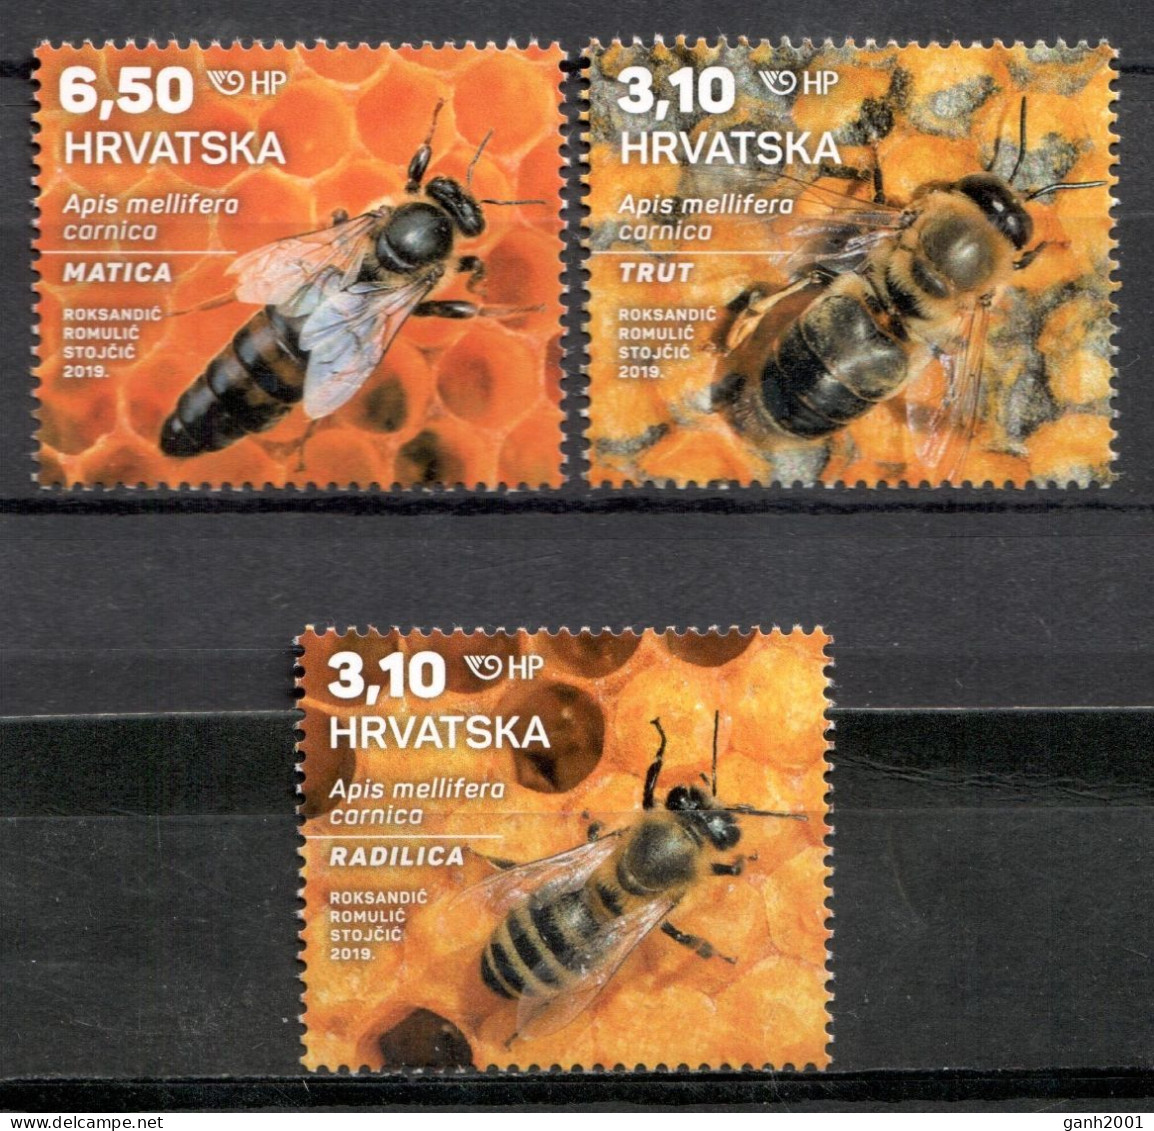 Croatia 2019 Croacia / Insects Bees Beetles MNH Insectos Abejas Escarabajos Bienen Insekten / Cu22057  27-15 - Abeilles